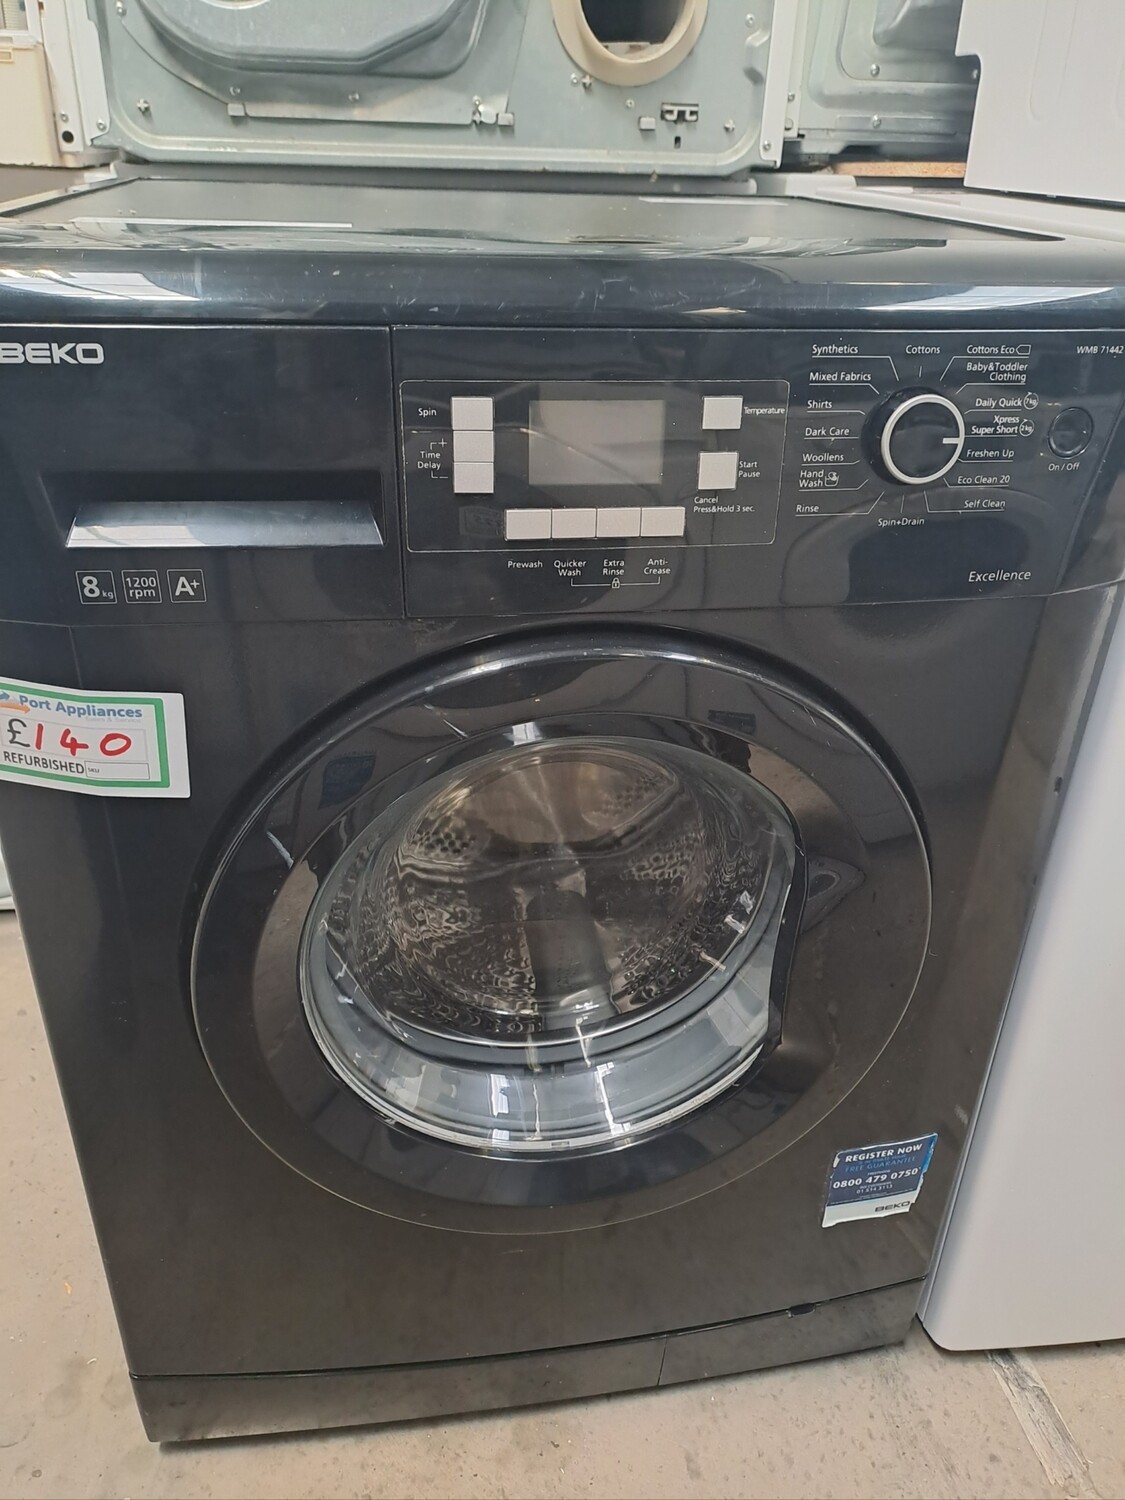 Beko A+ 8kg Load 1200 Spin Washing Machine - Black - Refurbished - 6 Month Guarantee